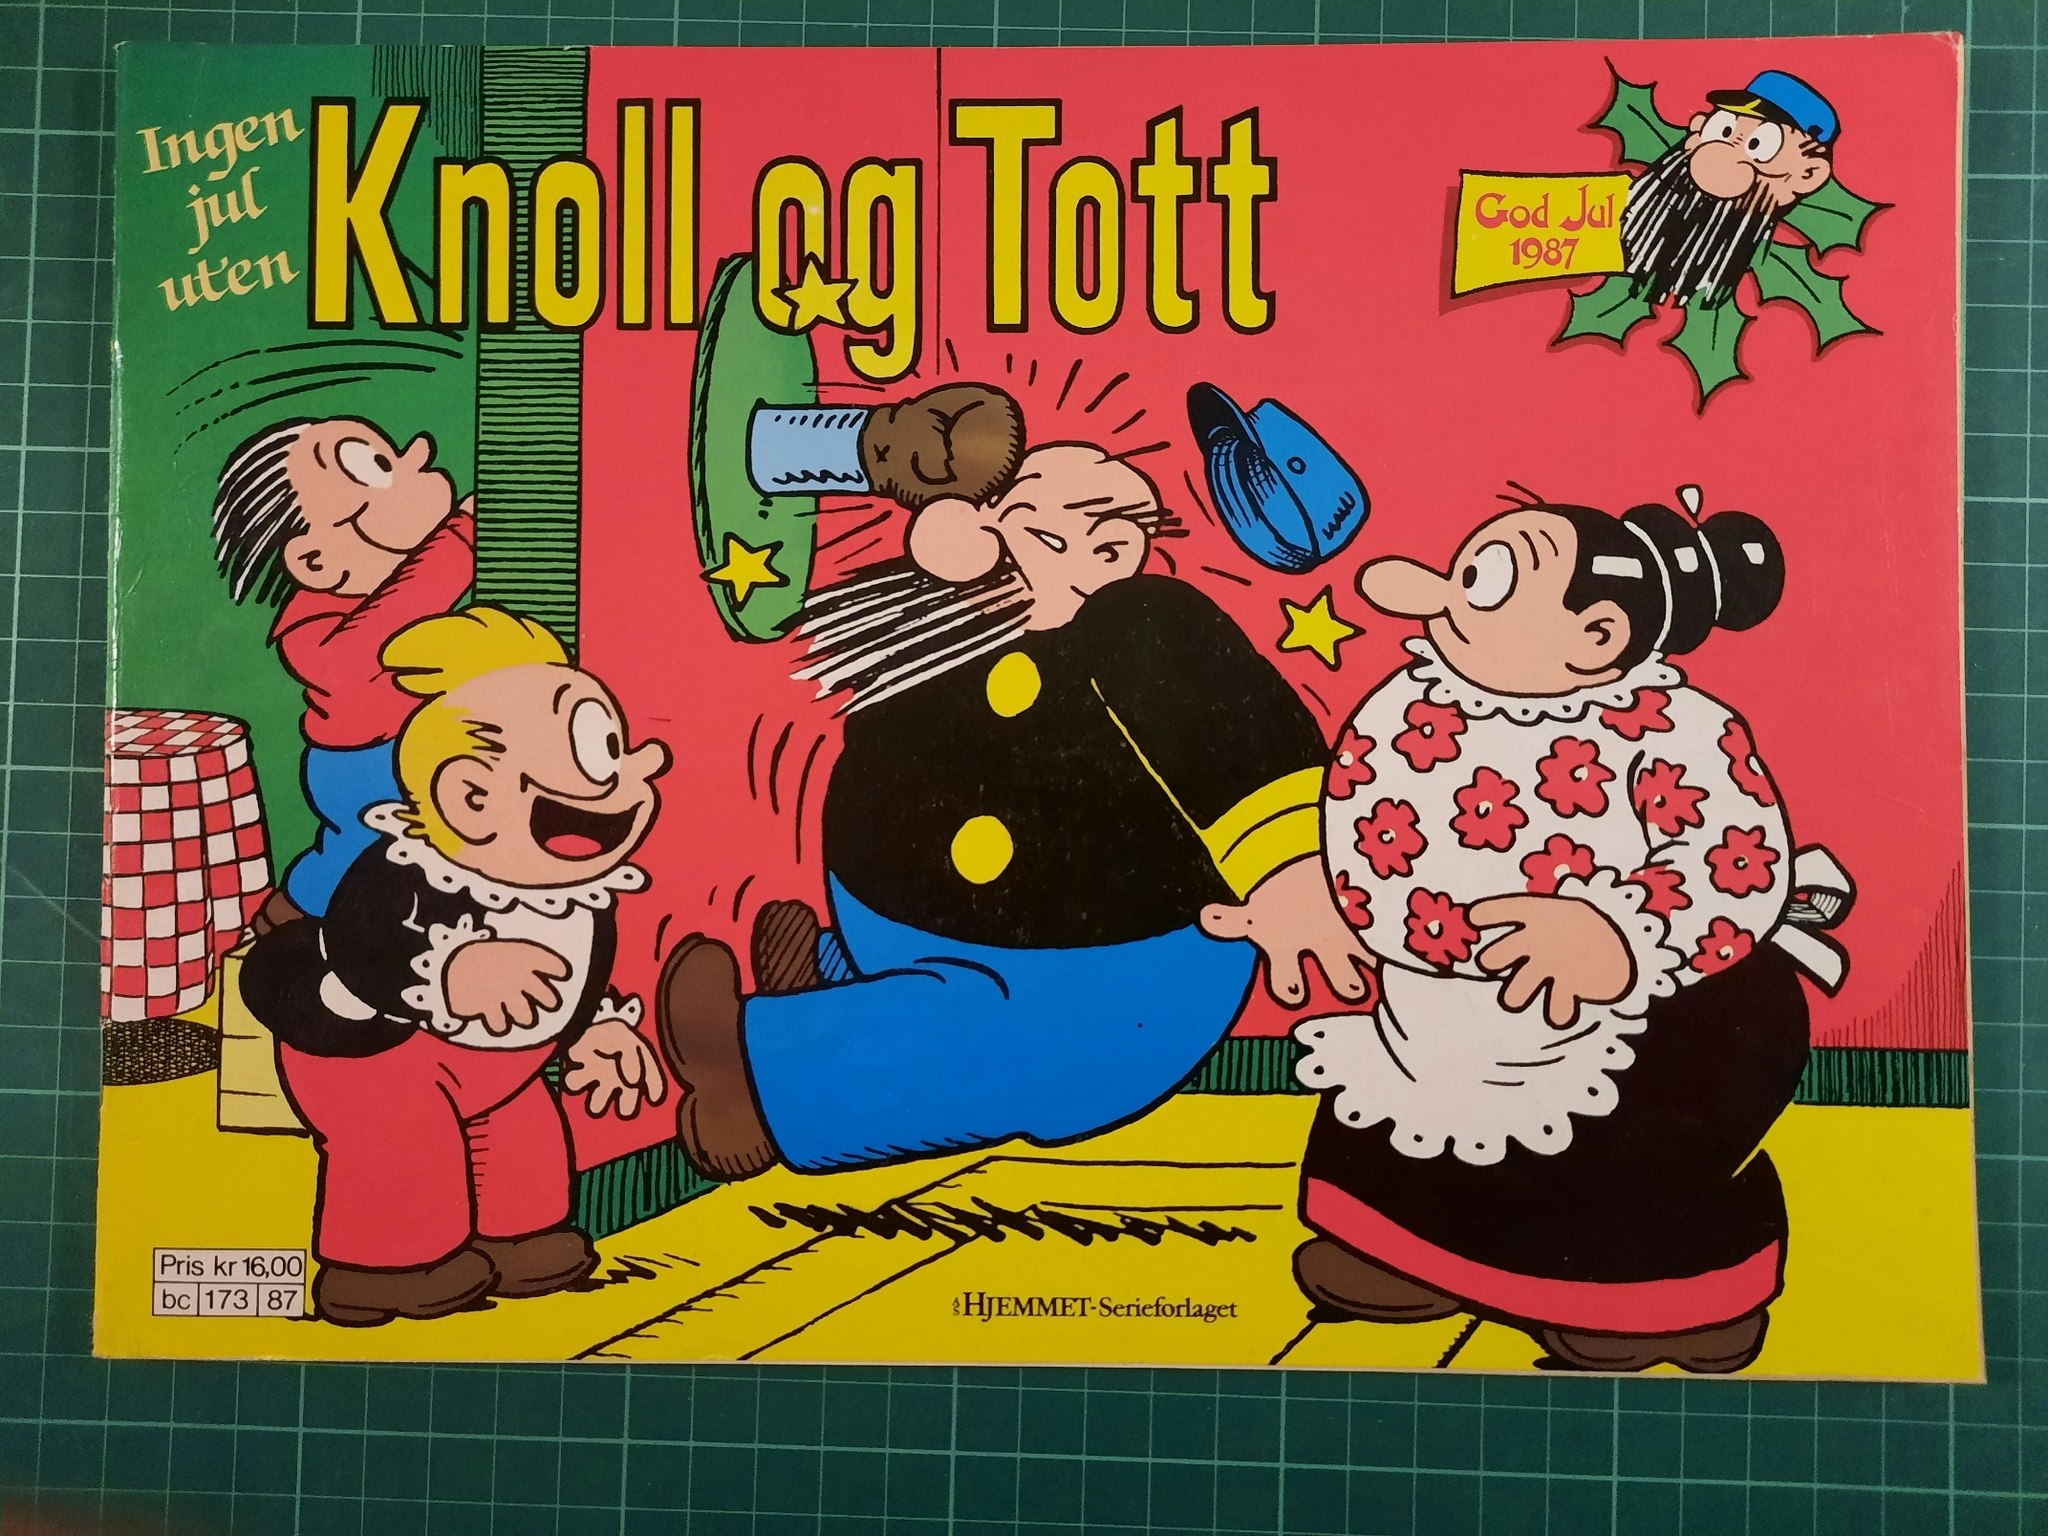 Knoll og Tott 1987